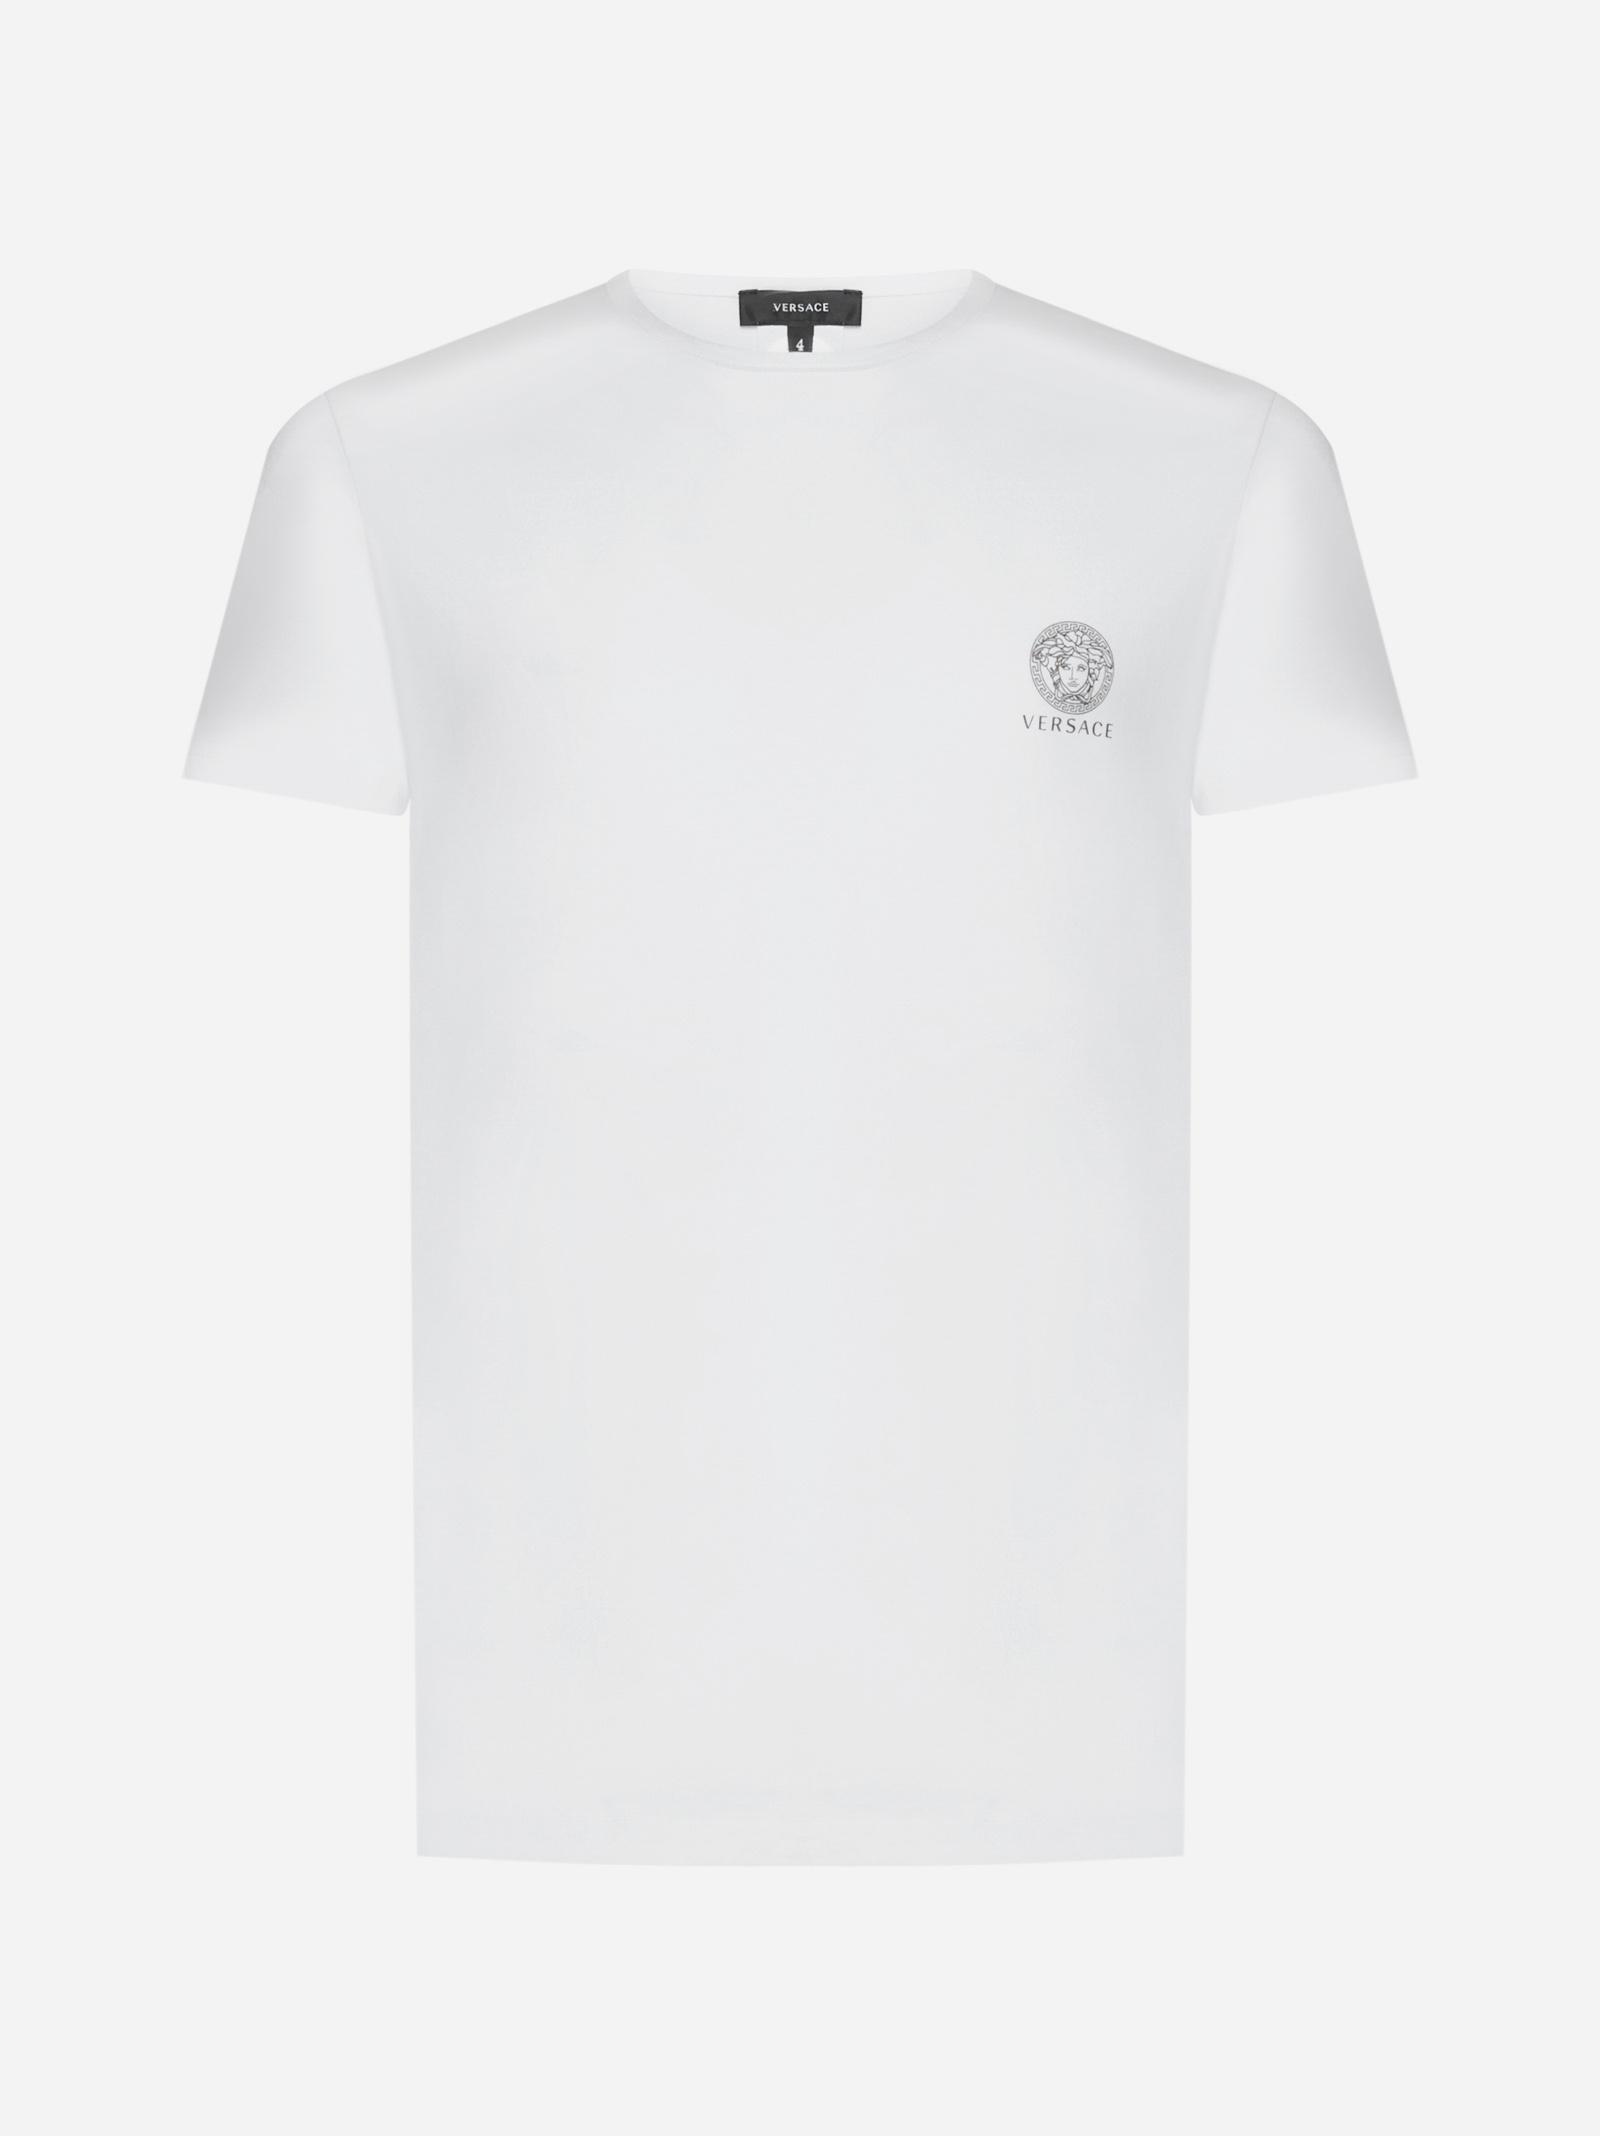 Versace Medusa Cotton T-shirt in White for Men | Lyst